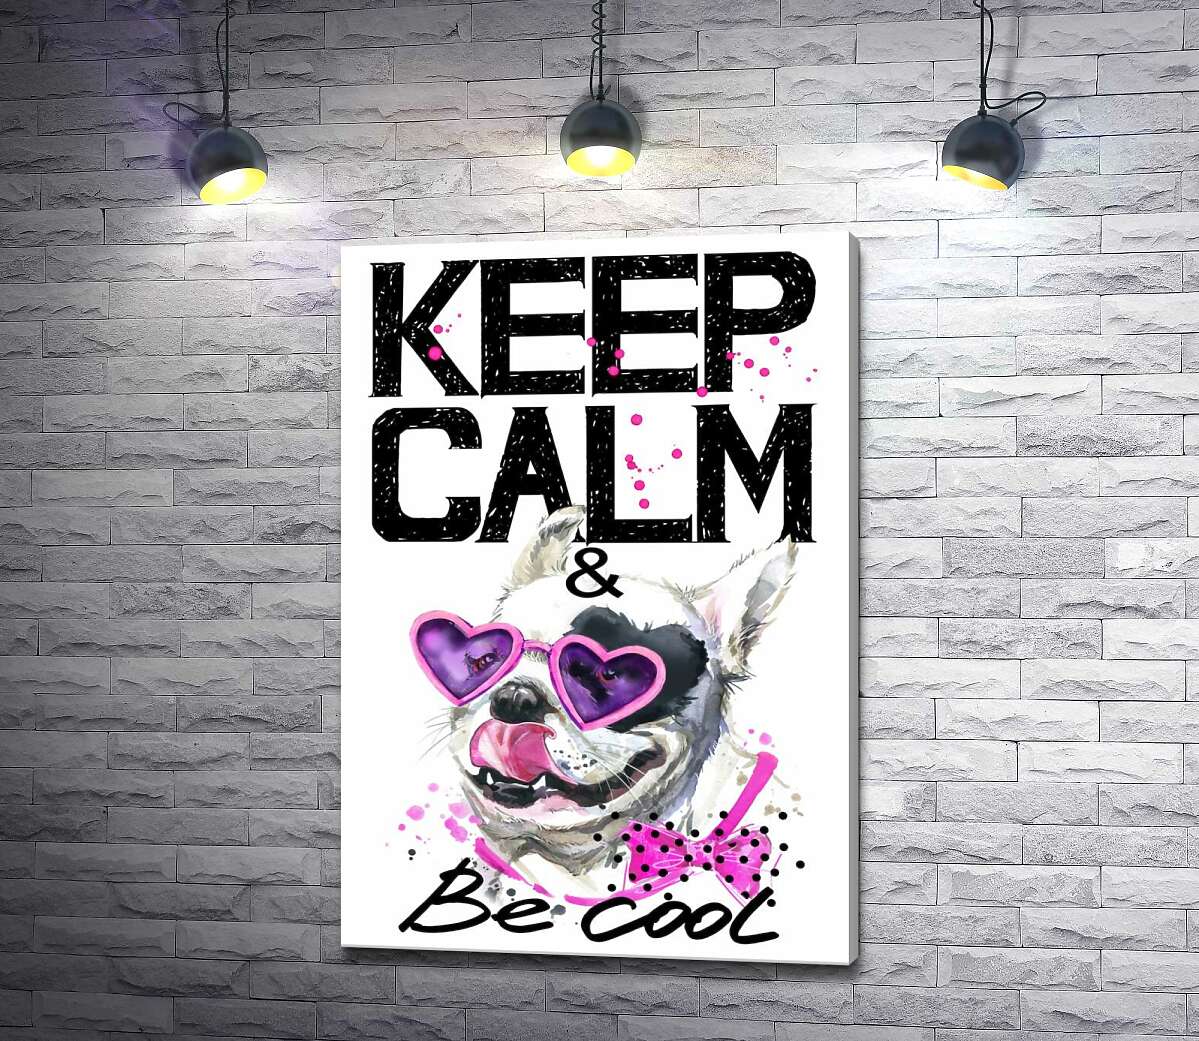 картина Веселый бульдог в розовых очках и бантике среди надписи "keep calm and be cool"